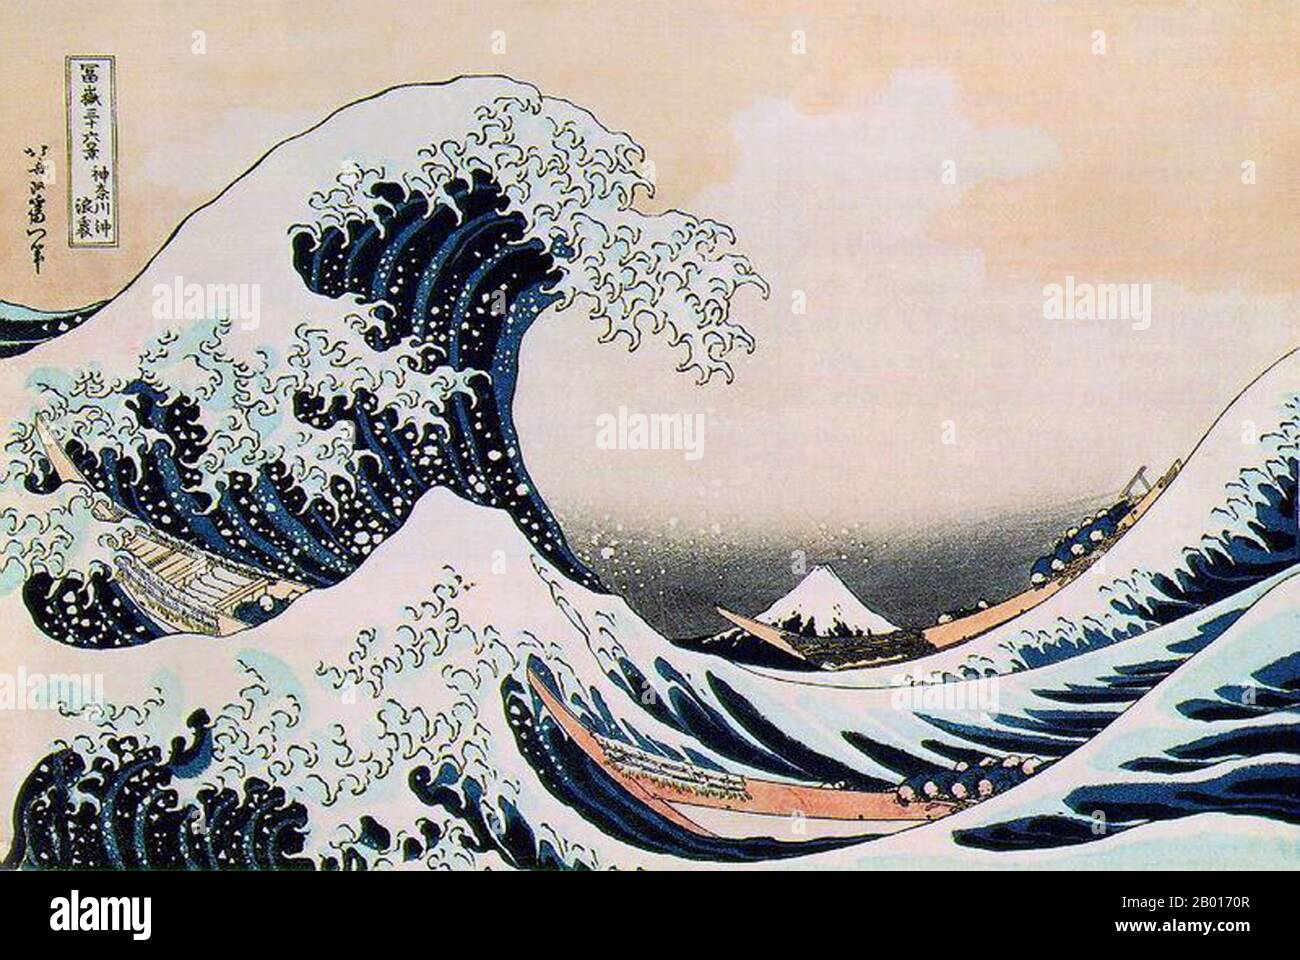 Japon: 'La Grande vague au large de Kanagawa'.Impression de blocs de bois Ukiyo-e de la série 'trente-six vues du Mont Fuji' par Katsushika Hokusai (31 octobre 1760 - 10 mai 1849), c.1830. Dans cette coupe de bois, Hokusai montre le Mont Fuji en arrière-plan.Les vagues qui font rage dans cette illustration sont souvent appelées à tort ‘tsunami’ ; cependant, comme les vagues sont au large, elles sont plus correctement connues en japonais sous le nom de ‘okinami’. Banque D'Images